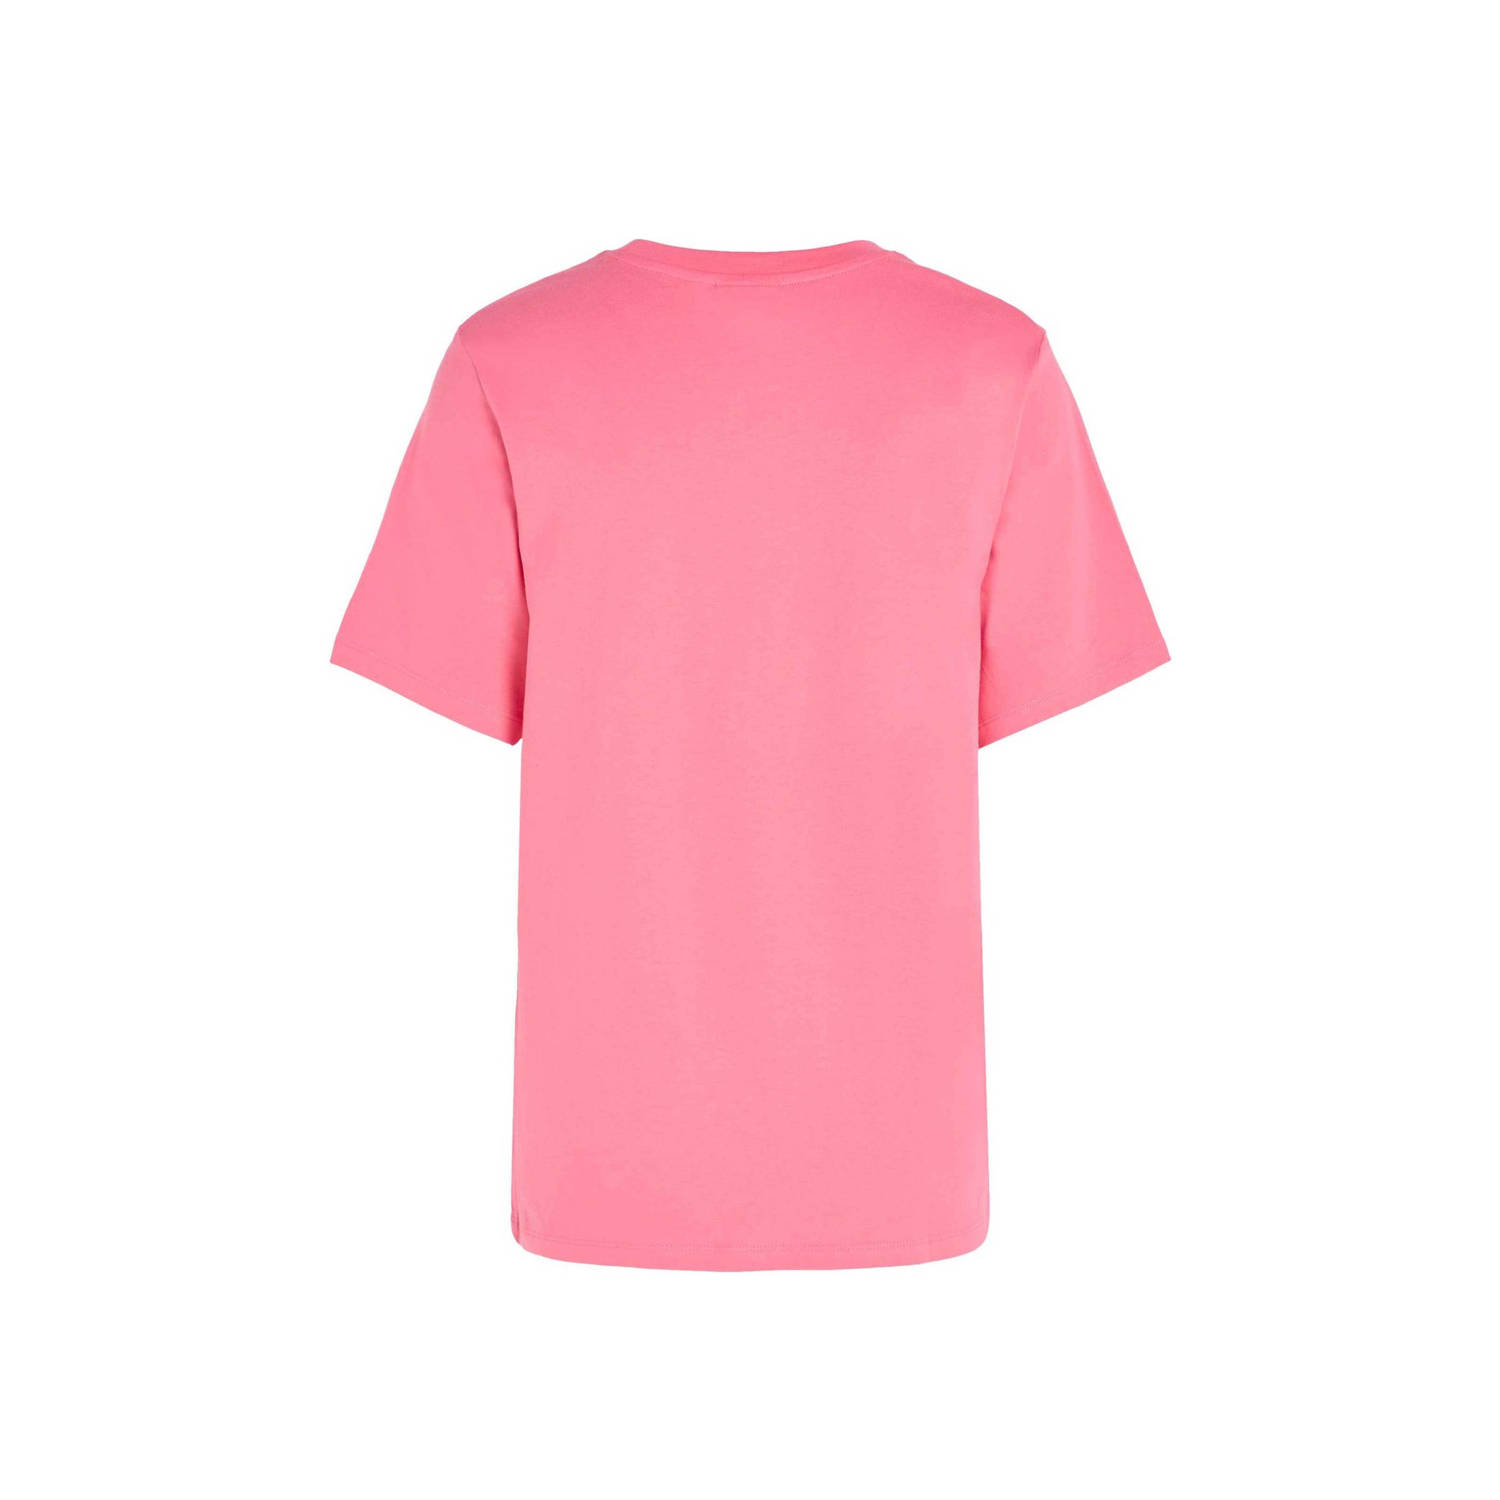 O'Neill T-shirt met tekst roze